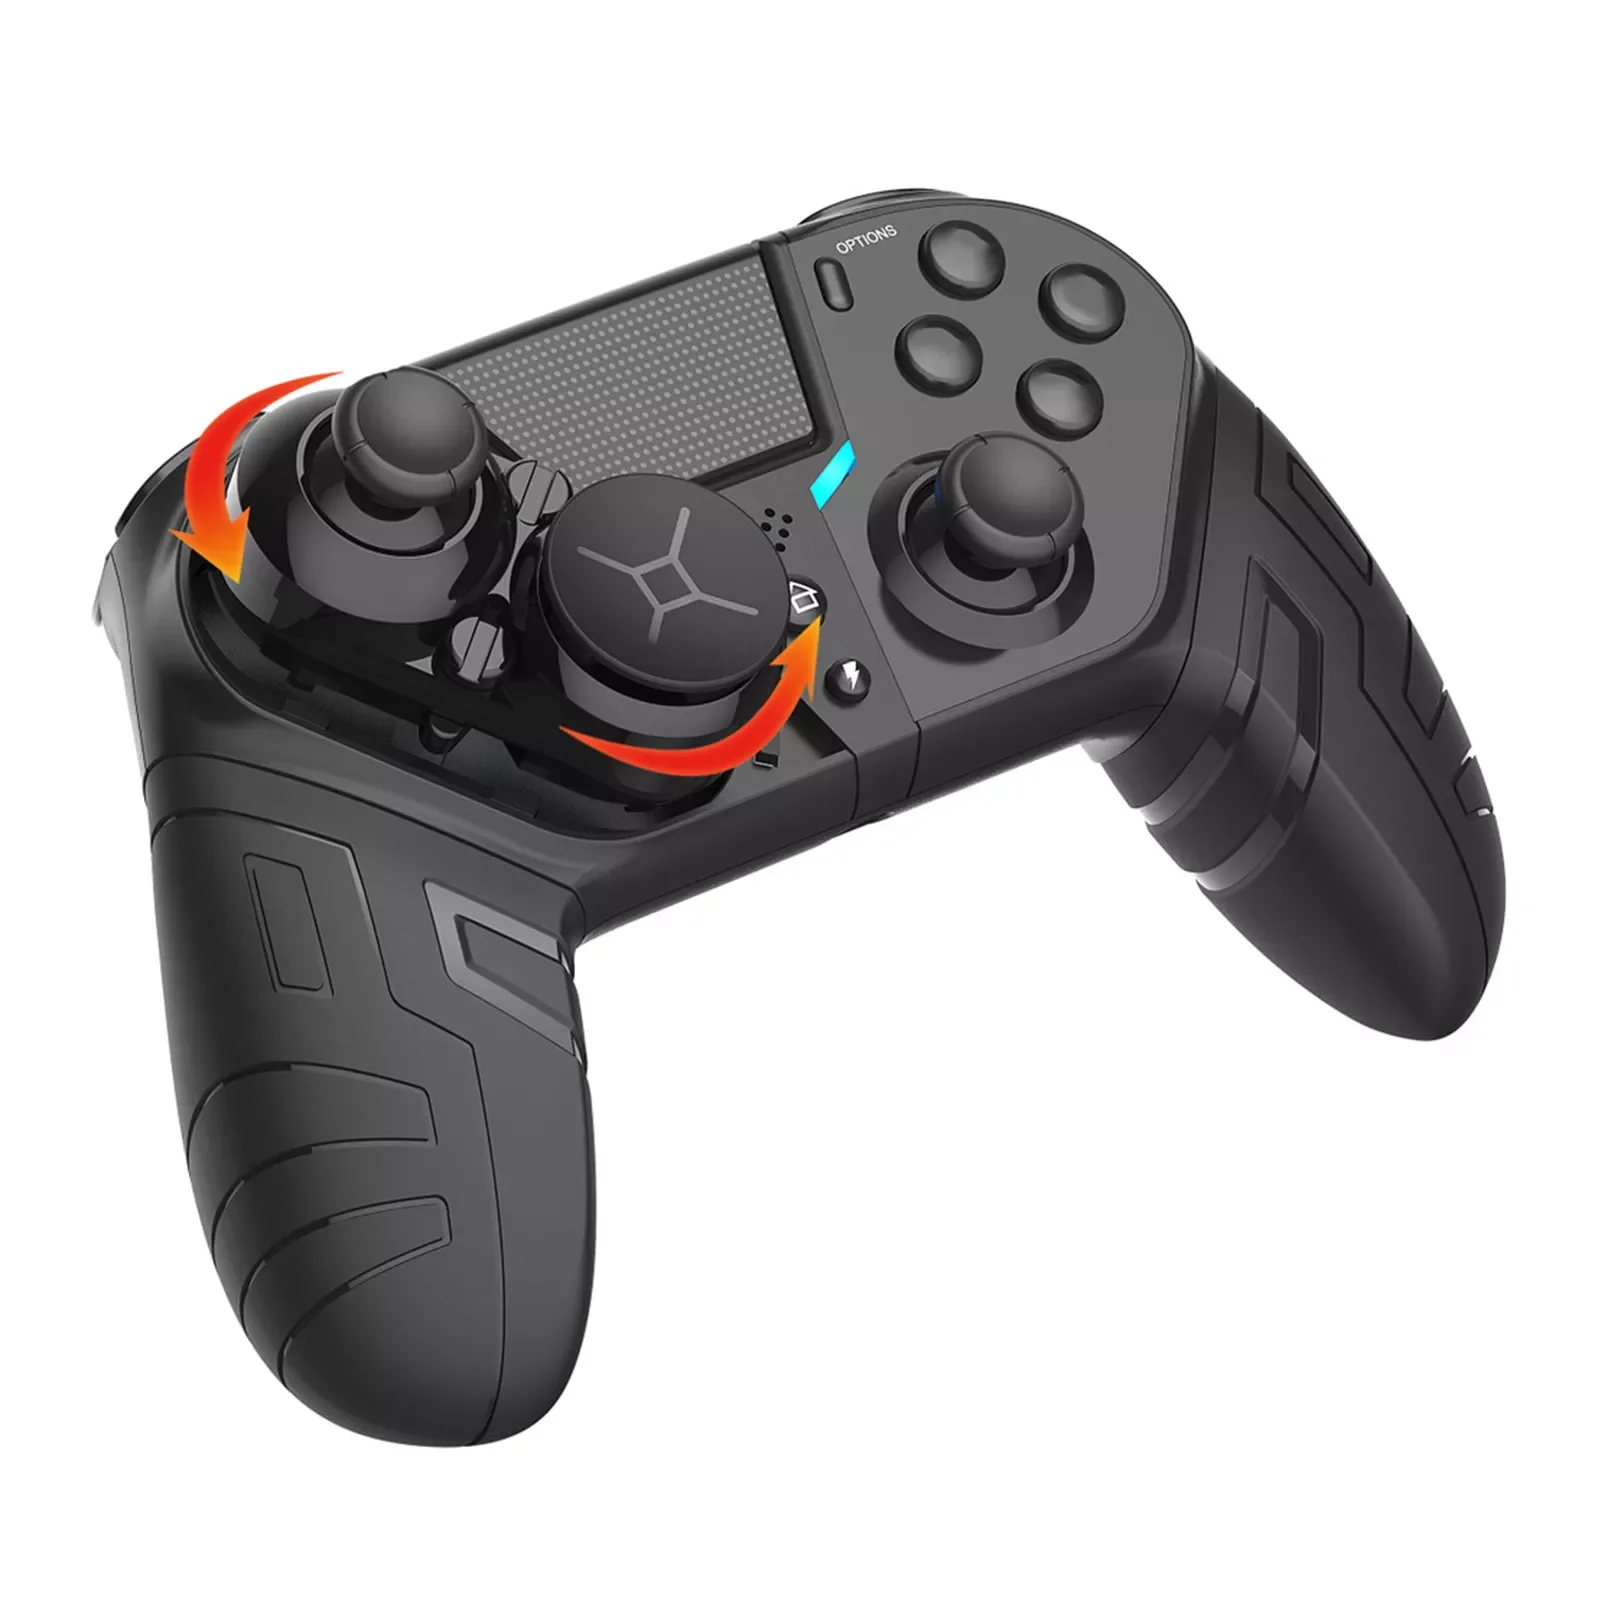 

Kontroler bezprzewodowy kompatybilny z PS4 podwójna wibracja kontroler do gier kontroler do gier z kablem do PS4 Gamepad PC